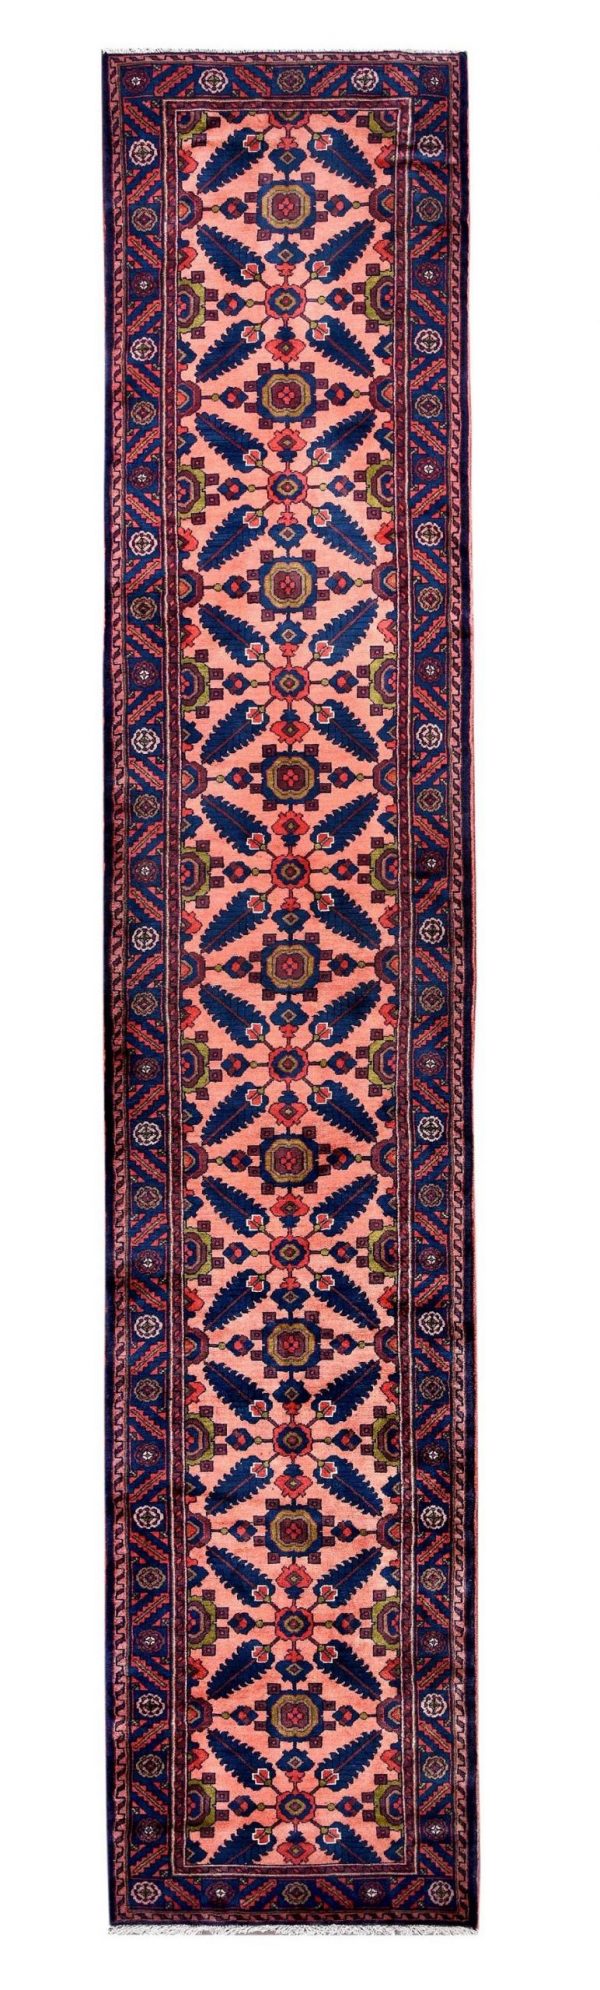 handmade persian runner carpet-long-dr322